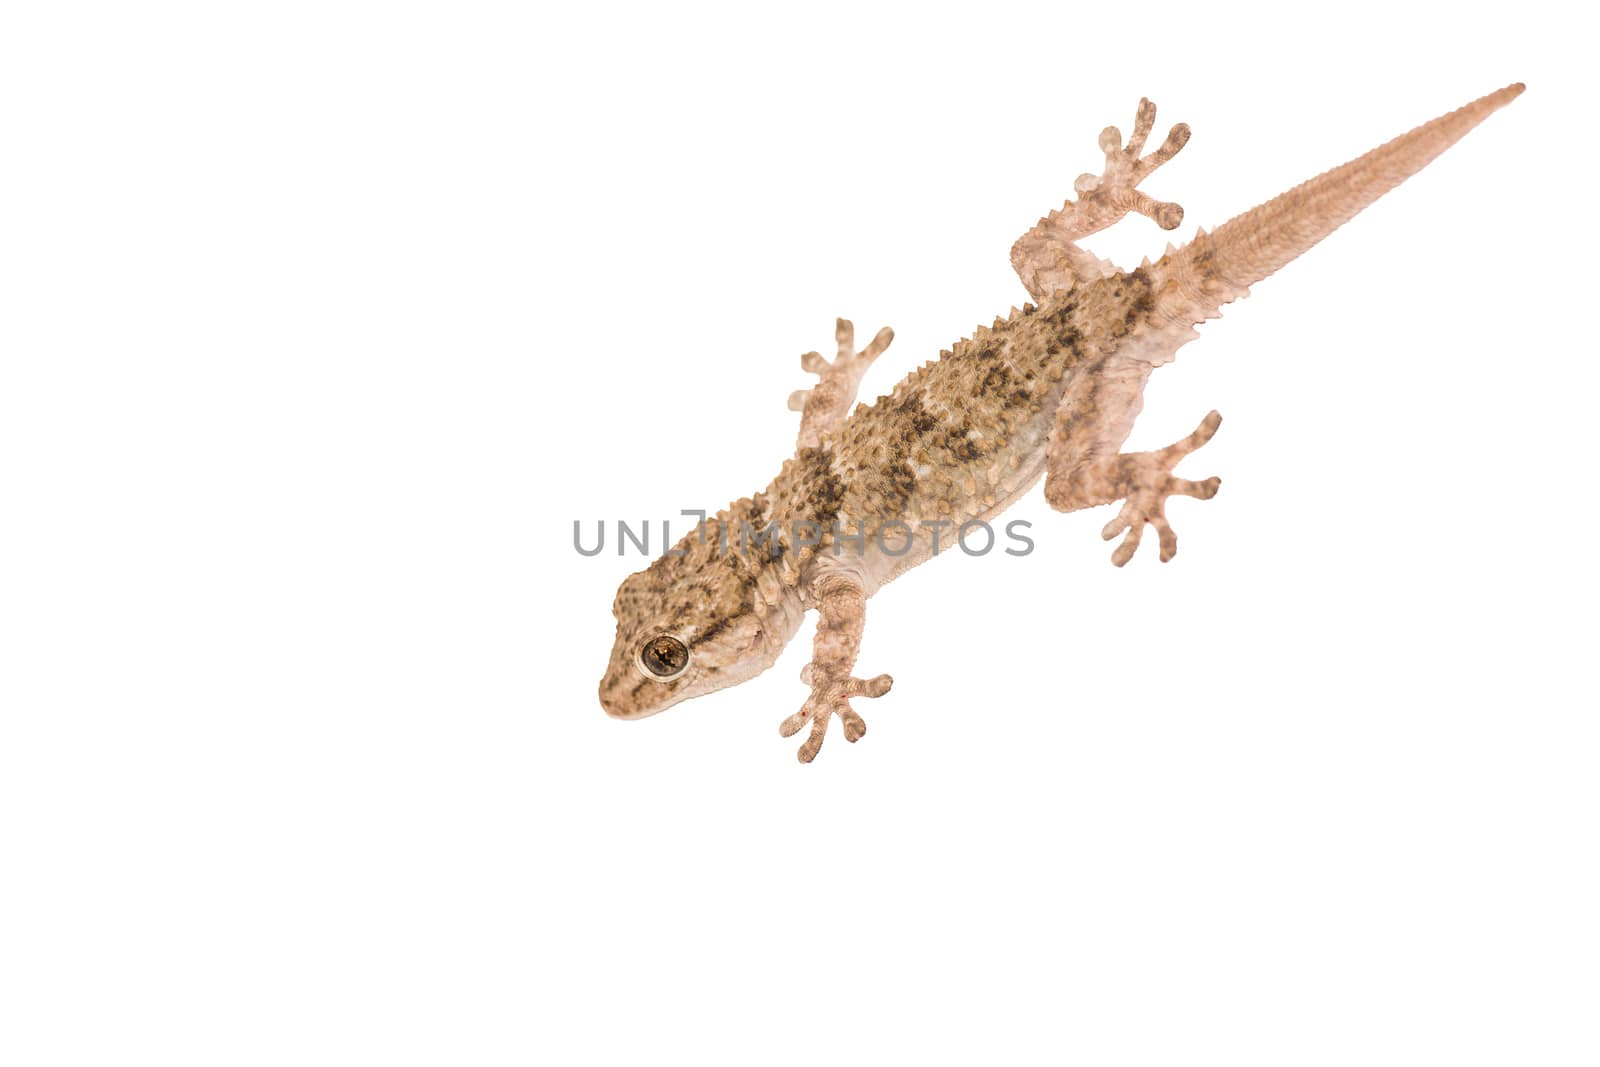 Gekko, small iguana isolated on white background